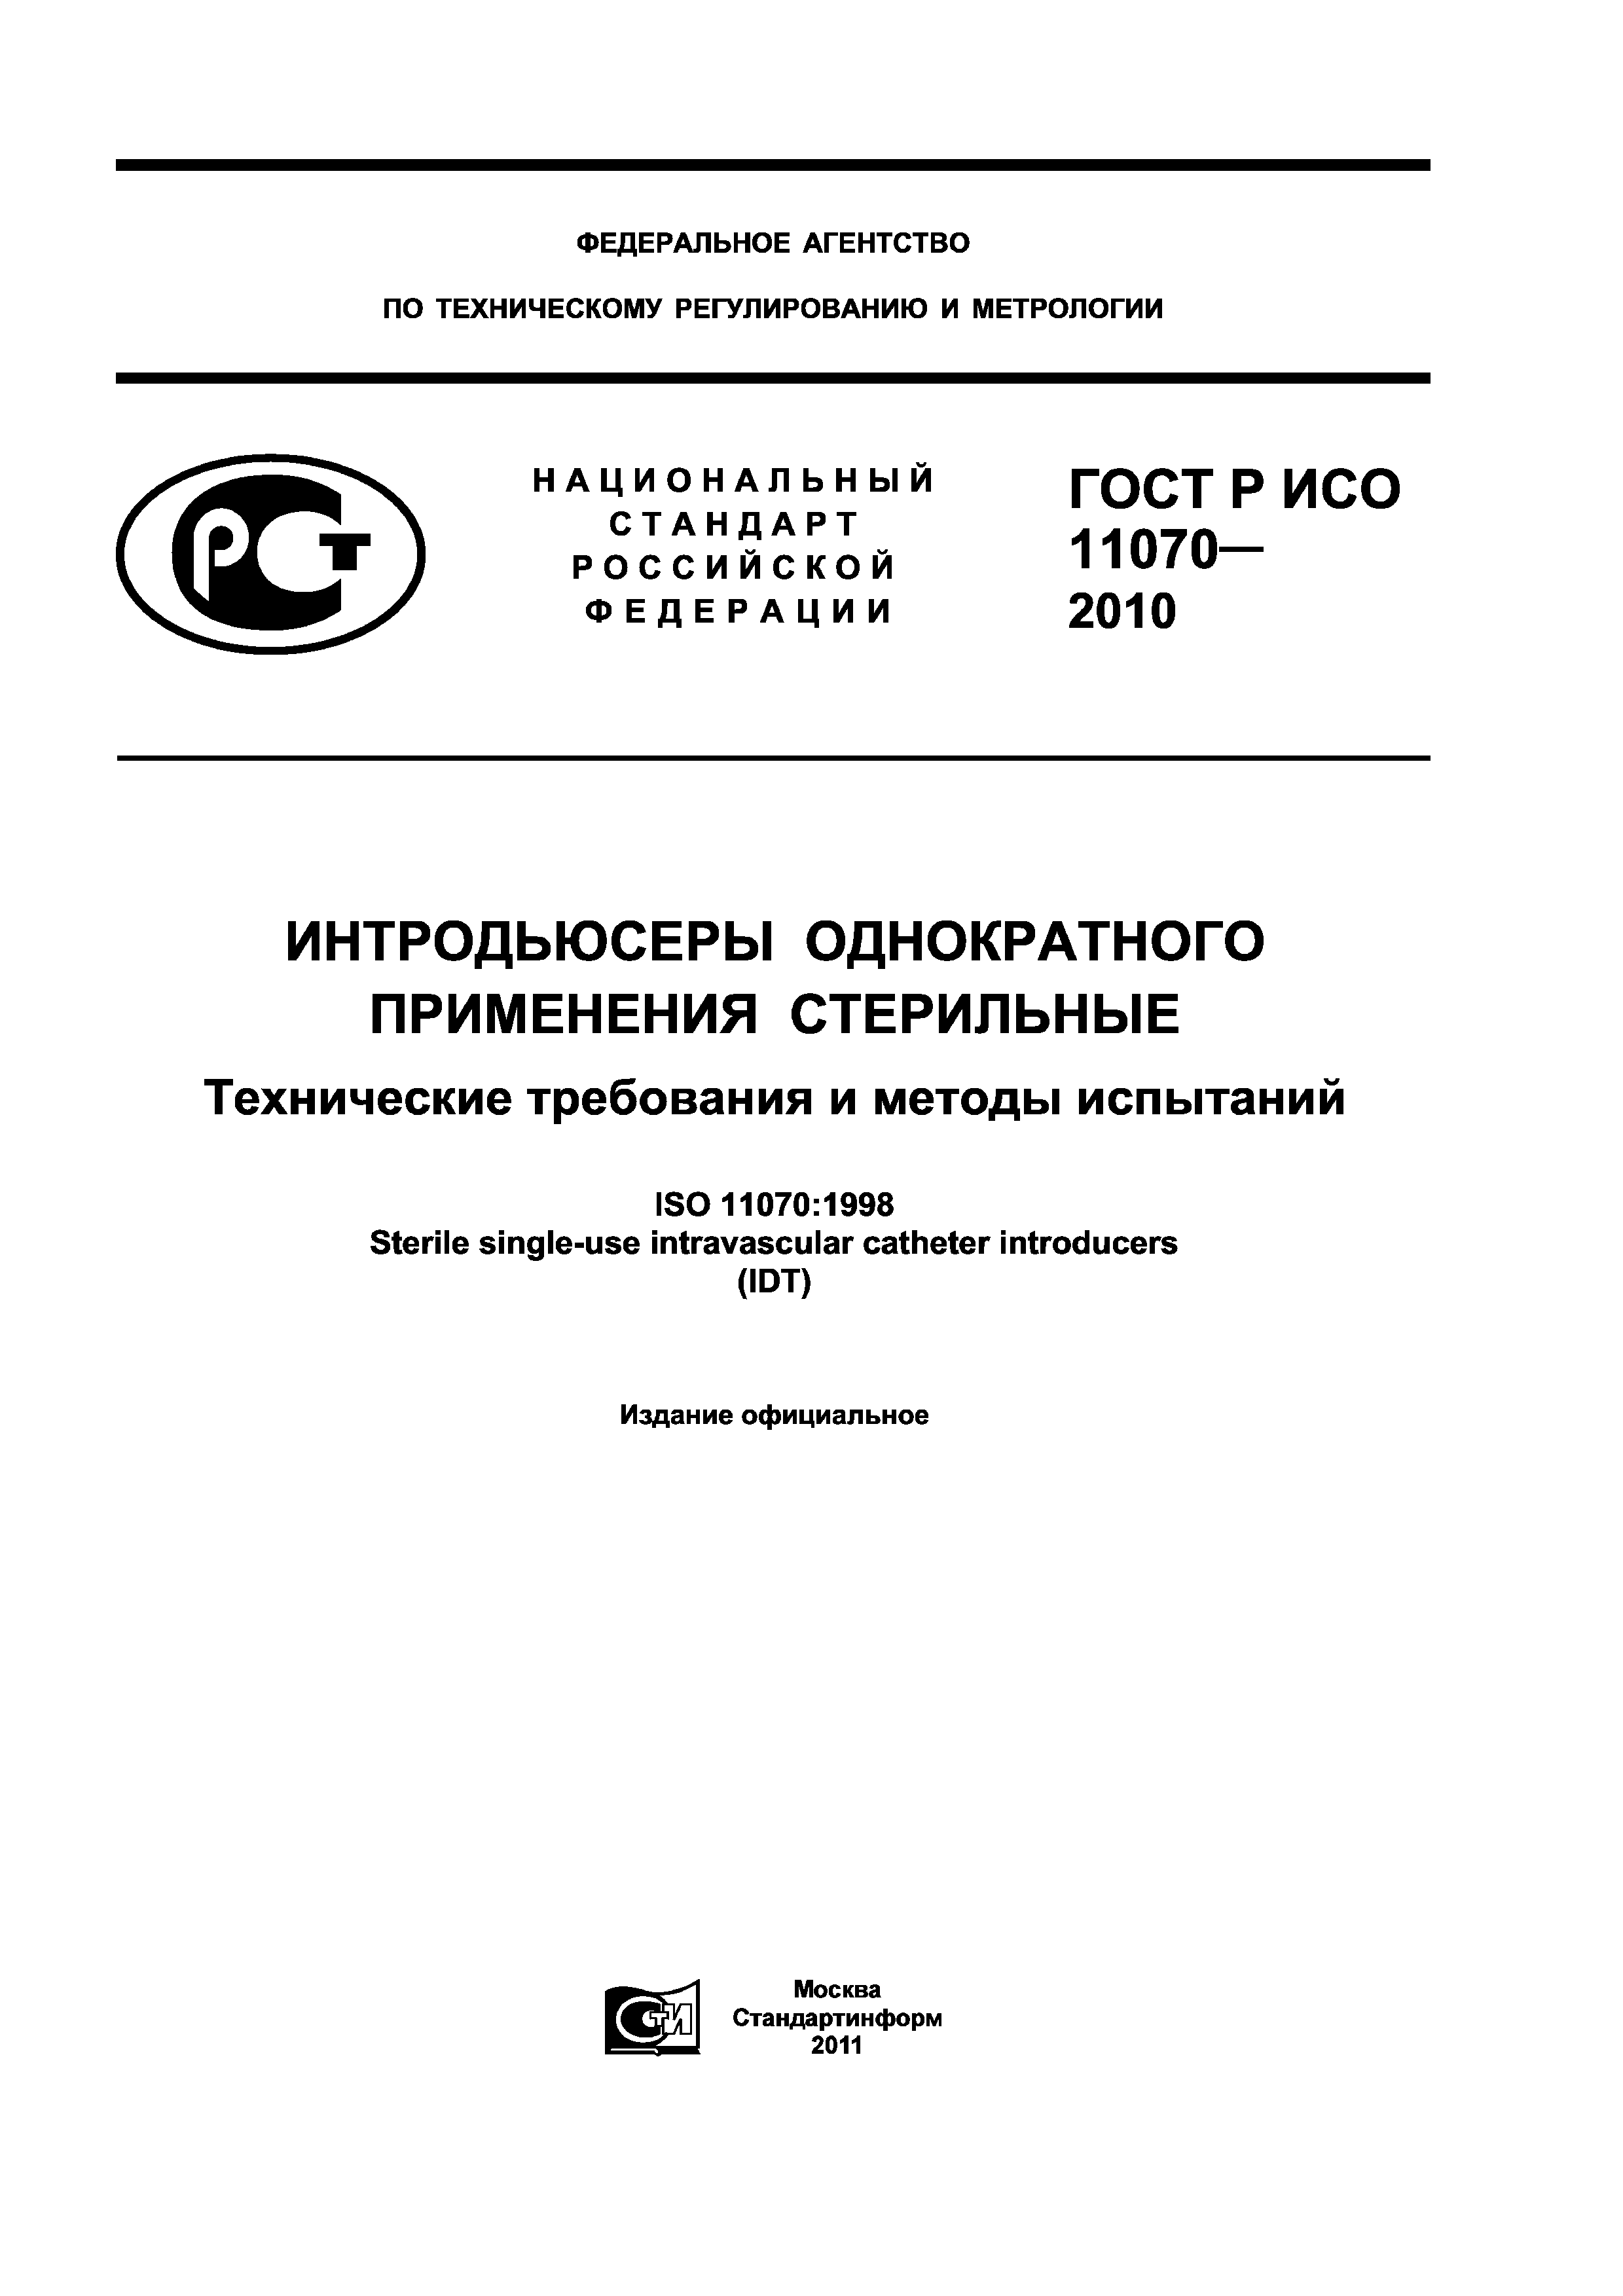 ГОСТ Р ИСО 11070-2010